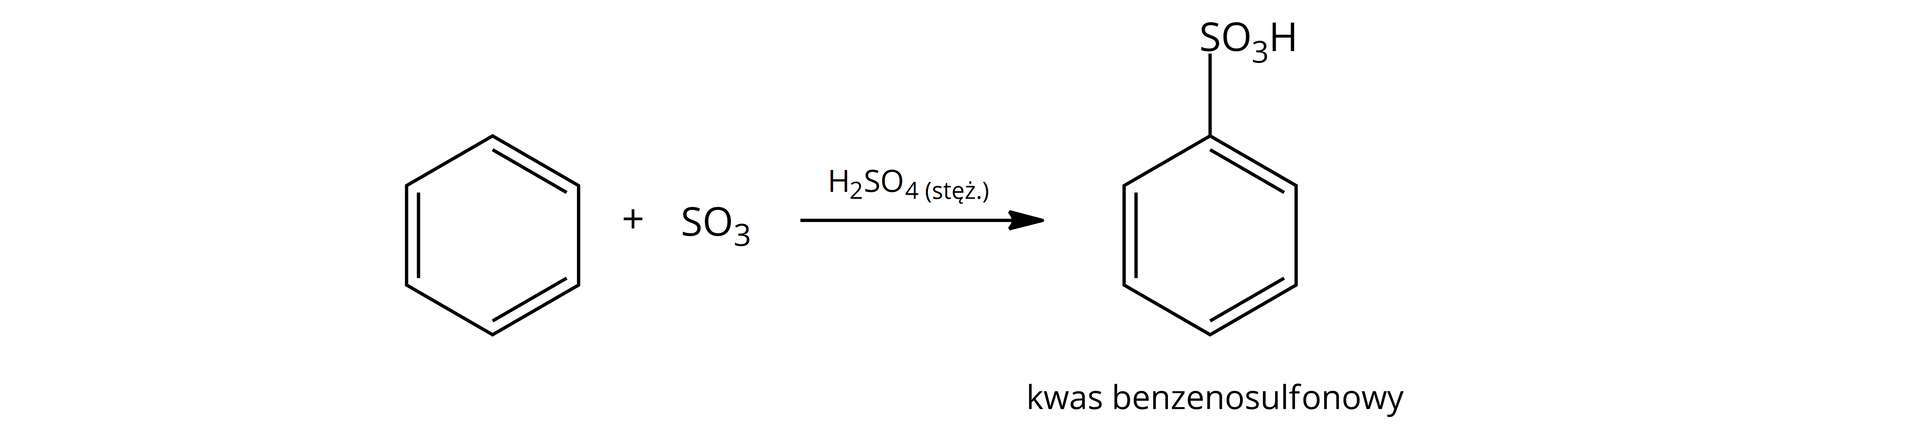 Na ilustracji znajduje się reakcja sulfonowania benzenu. Sześcioczłonowy pierścień benzenu plus S O indeks dolny trzy, strzałka w prawo, nad strzałką stężony kwas siarkowy H indeks dolny dwa S O indeks dolny cztery. Powstaje produkt w którym jeden z atomów wodoru benzenu został podstawiony przez grupę sulfonową H S O indeks dolny trzy. Pod wzorem podpis: kwas benzenosulfonowy.